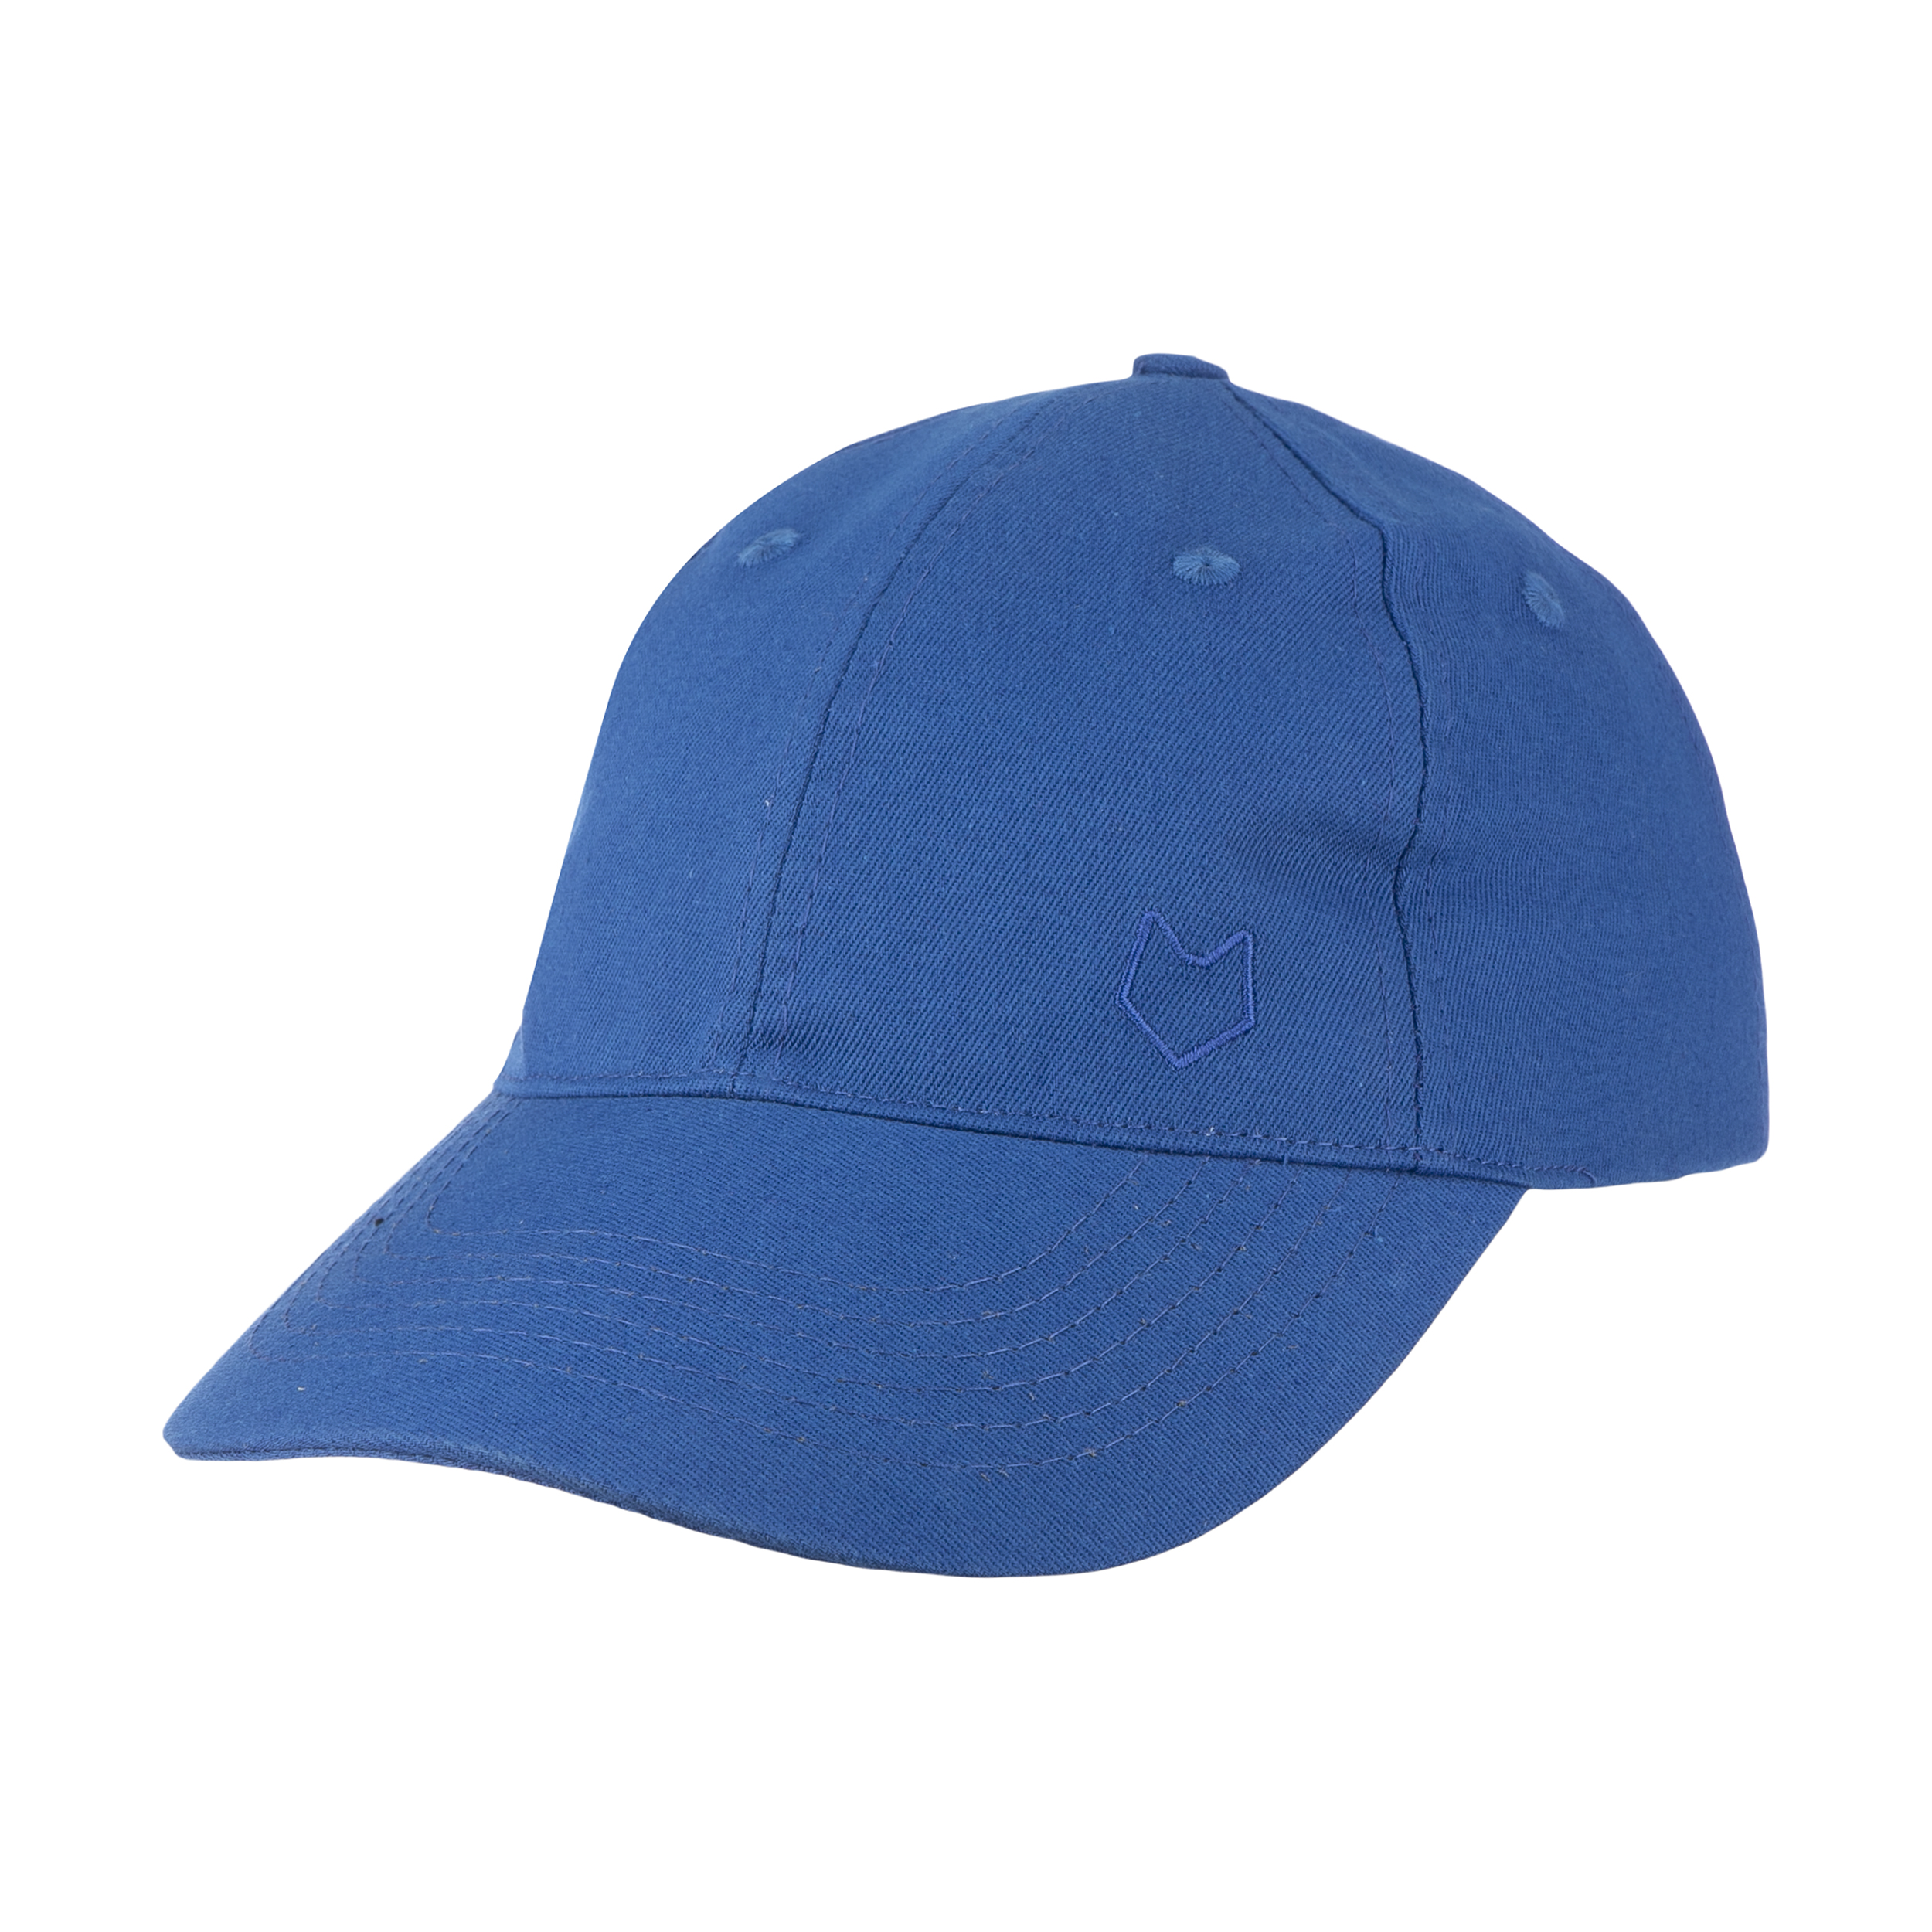 نکته خرید - قیمت روز کلاه کپ مل اند موژ مدل U07705-401 خرید